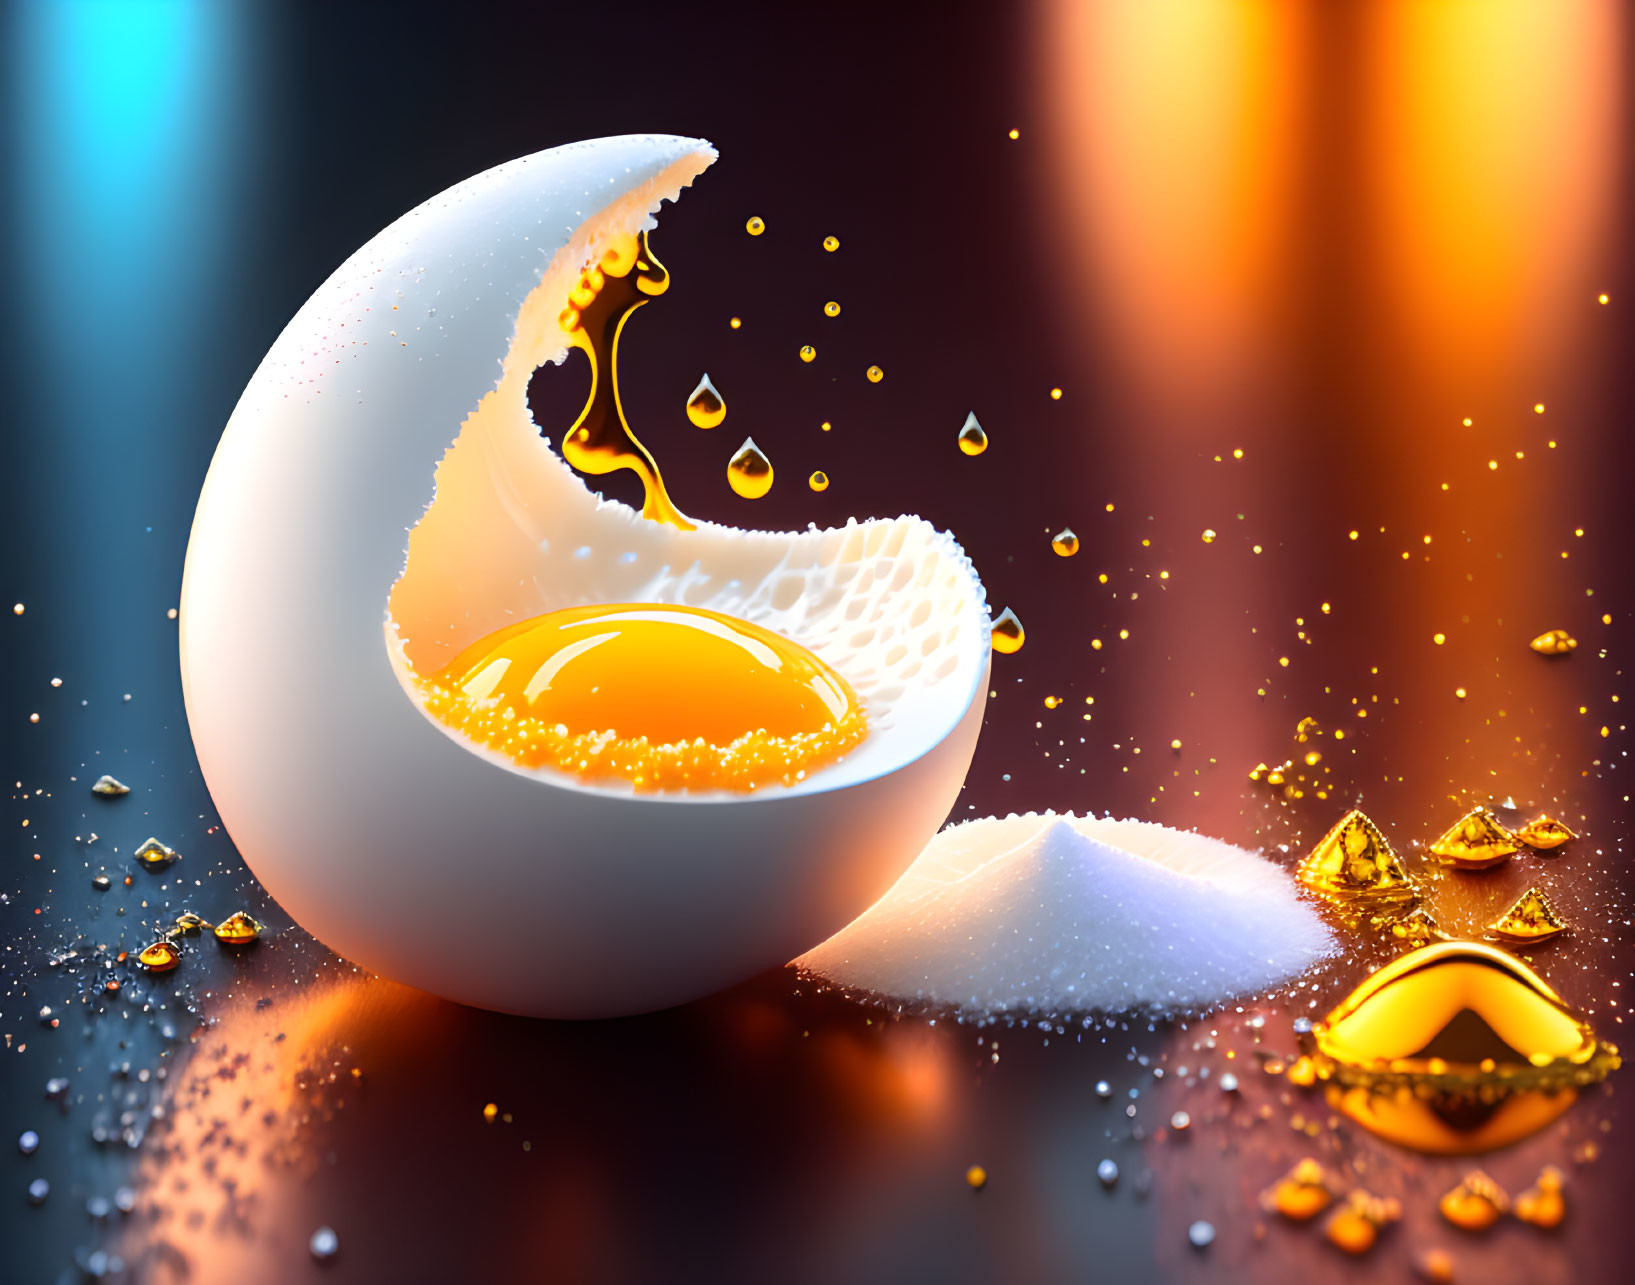 egg and sugar